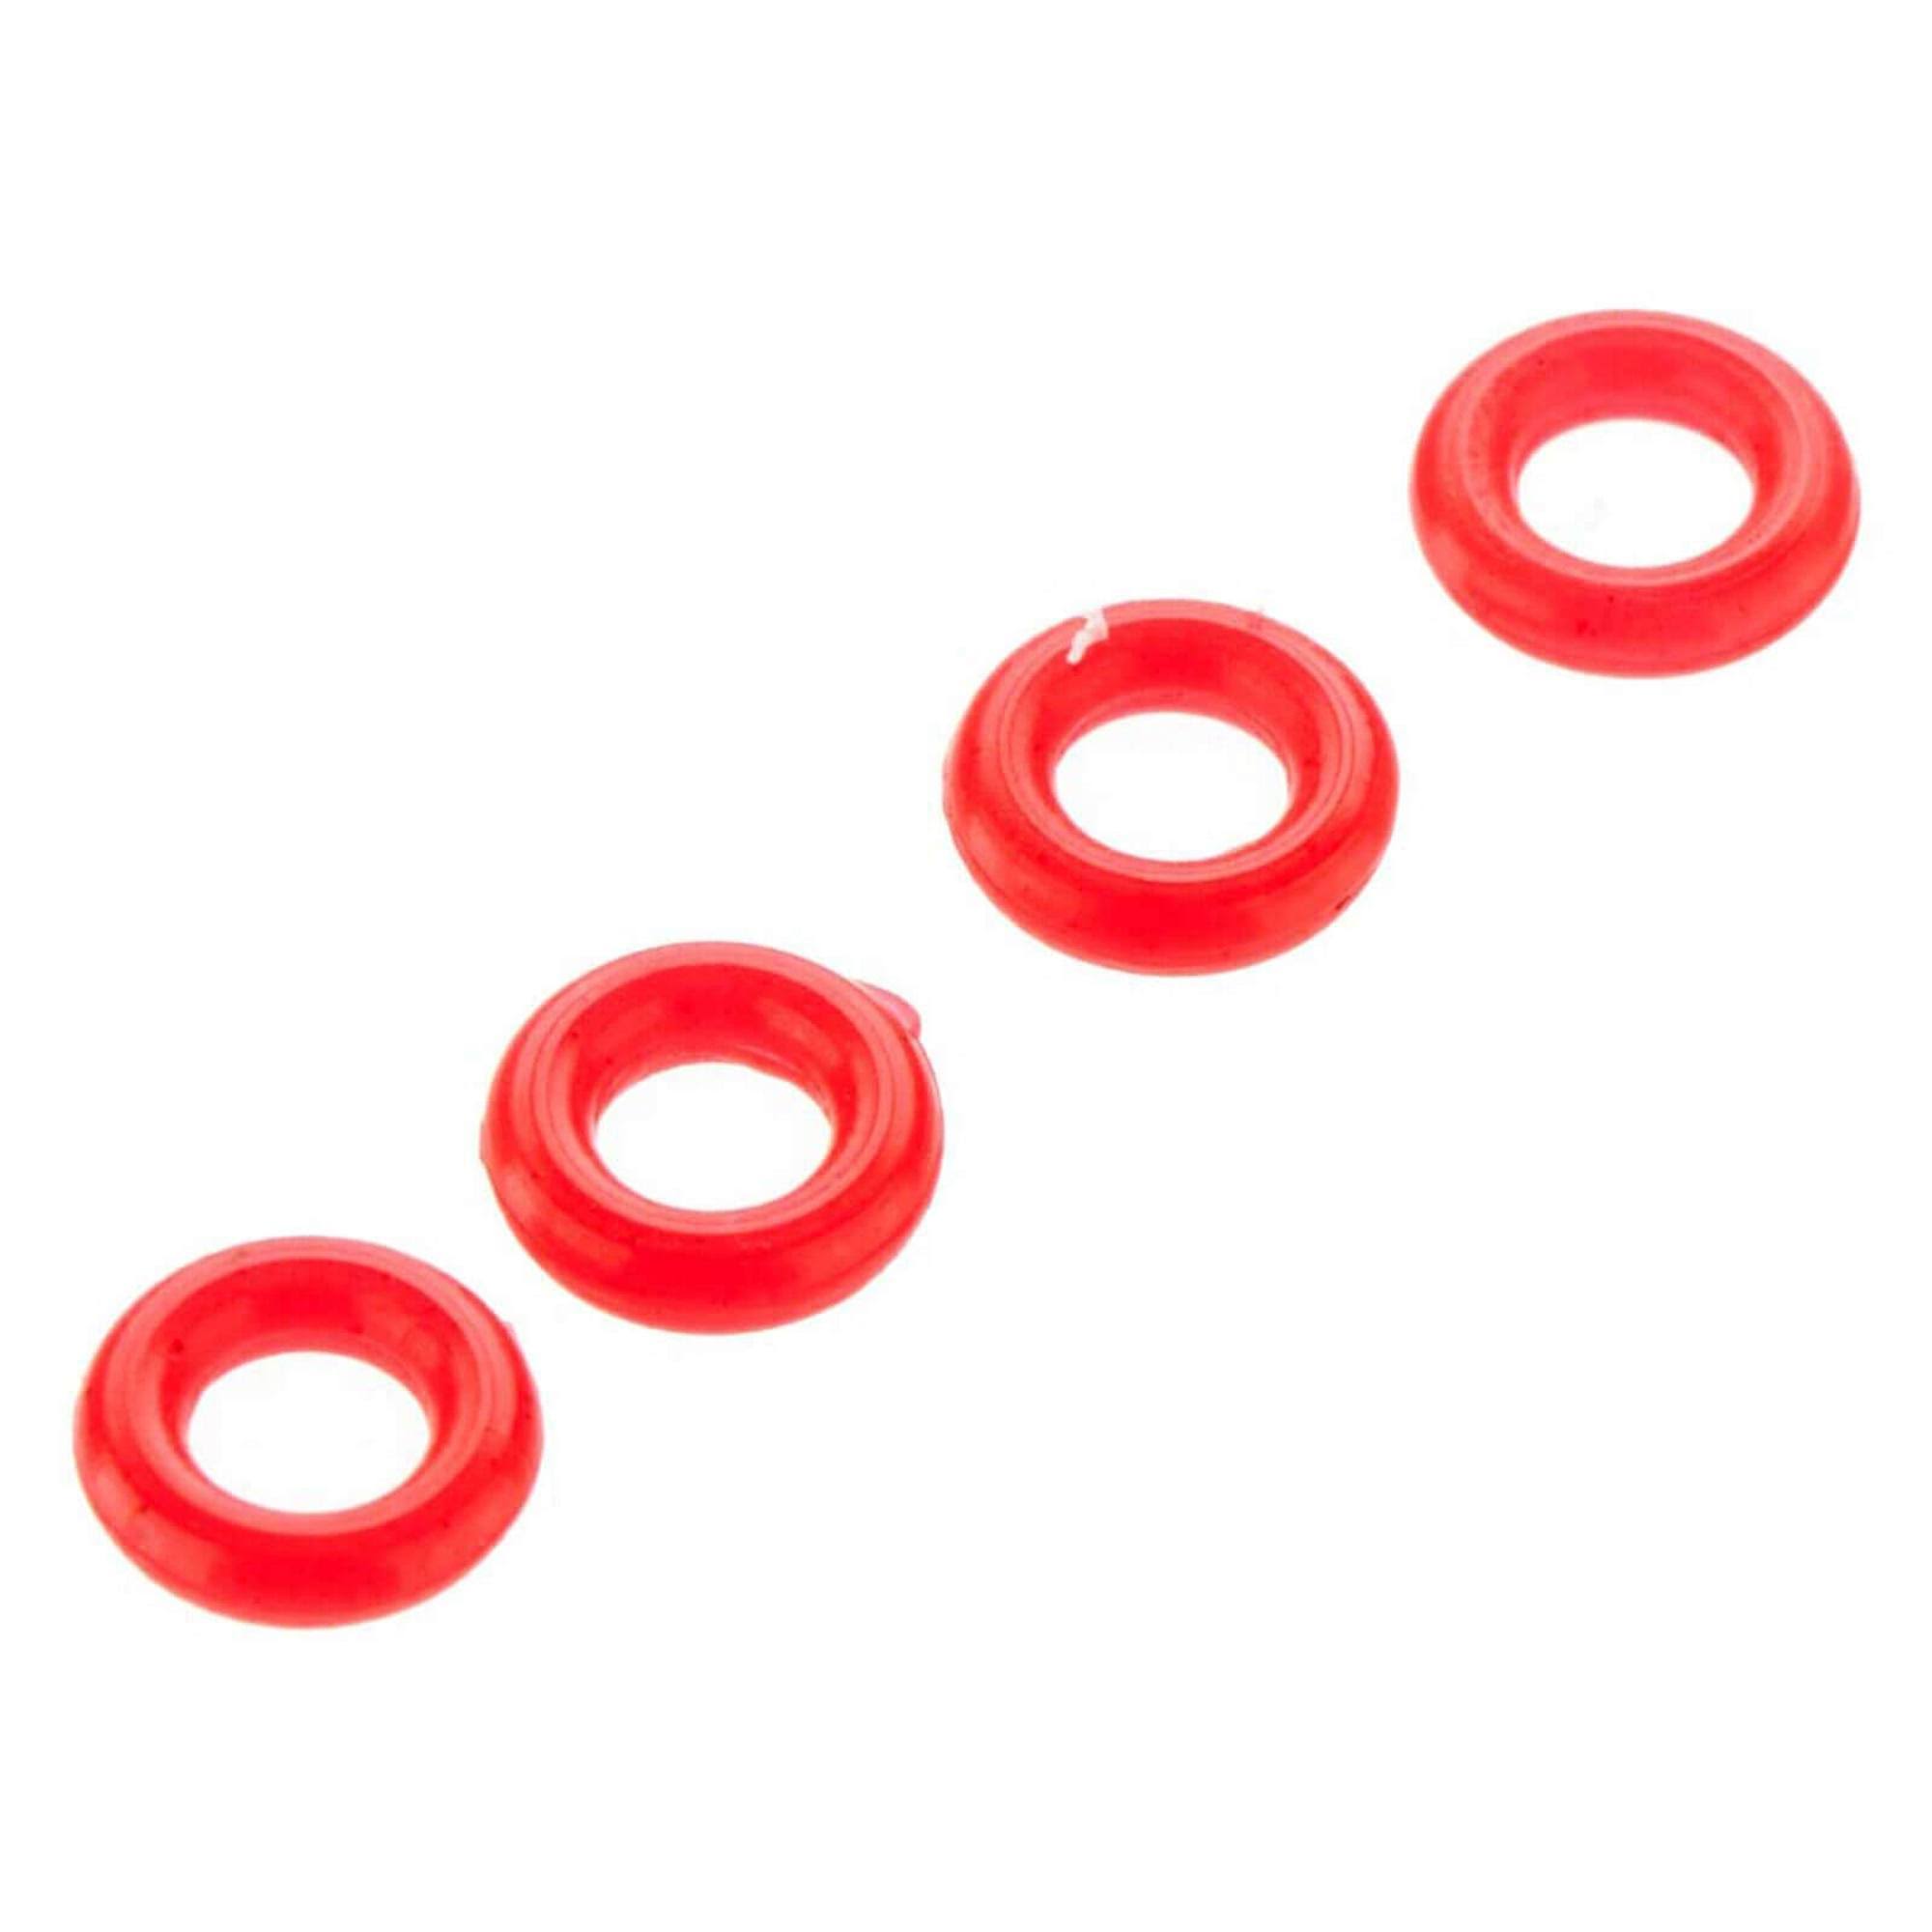 Arrma Typhon Kraton O-Ring - 3.5mm x 1.9mm, Red, 4pk